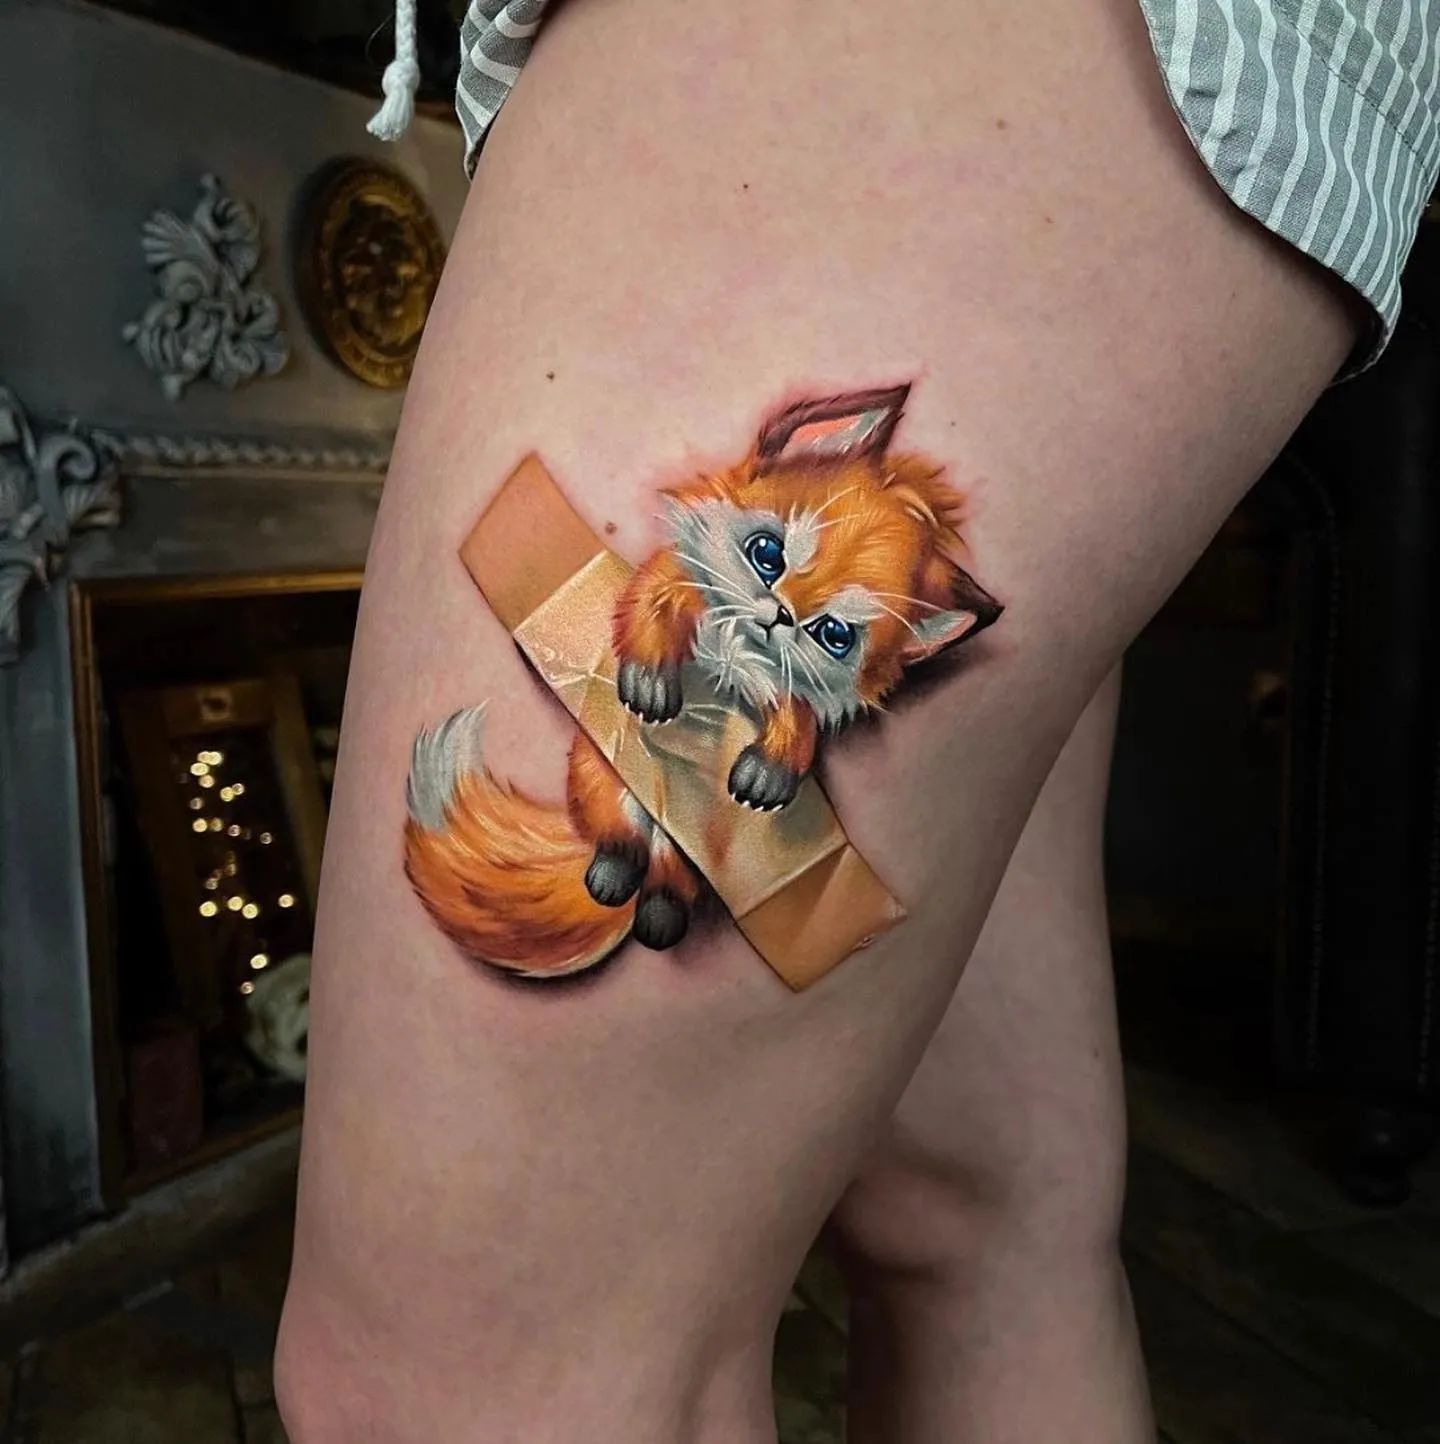 Taped Fox Tattoo on Hip - Best Tattoo Ideas Gallery